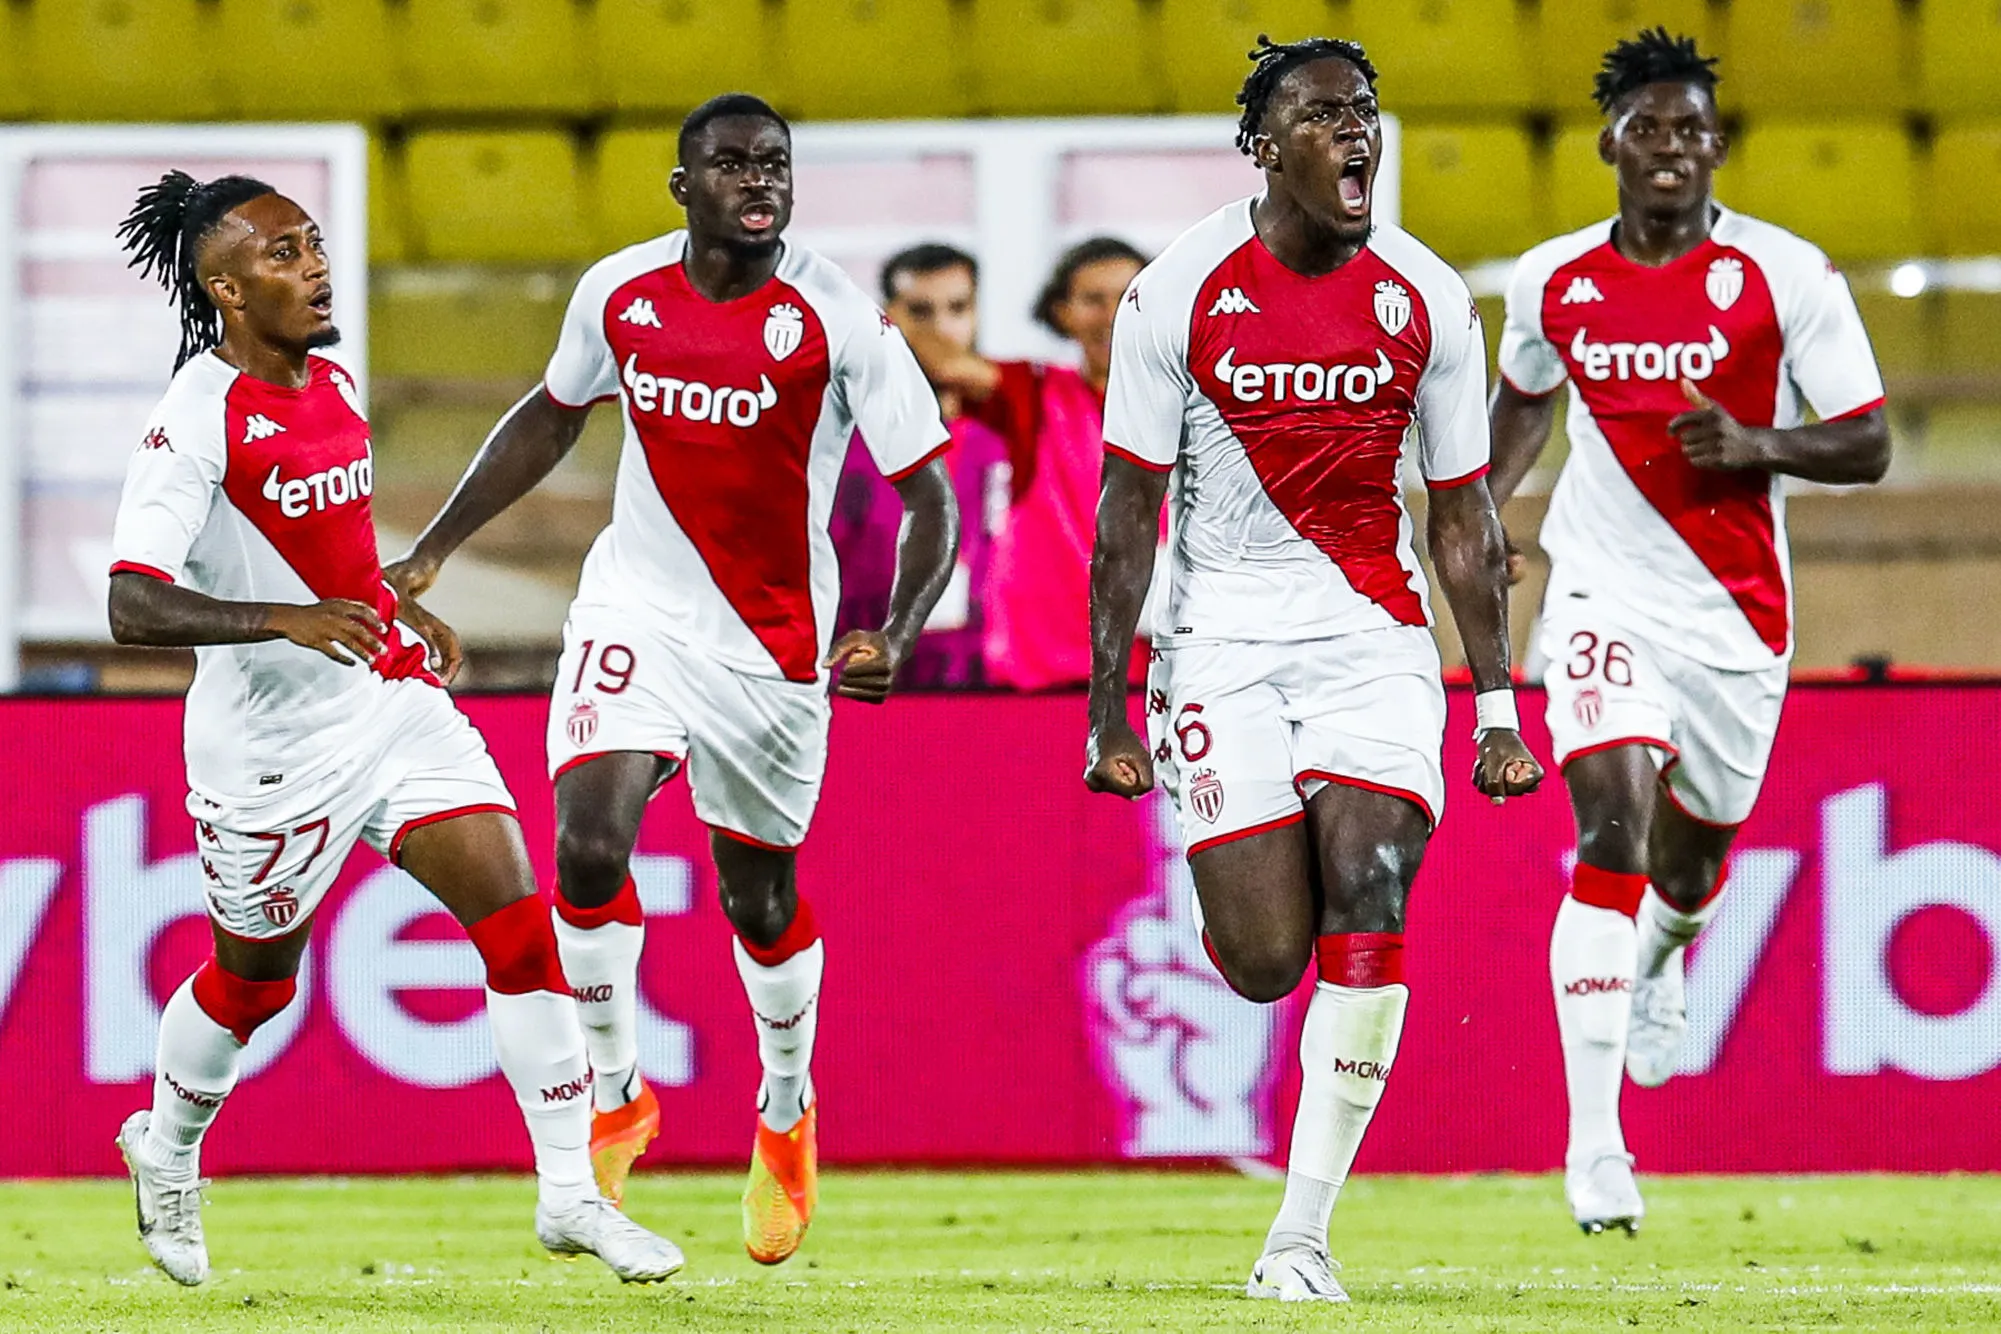 Pronostic Monaco Rennes : Analyse, cotes et prono du match de Ligue 1